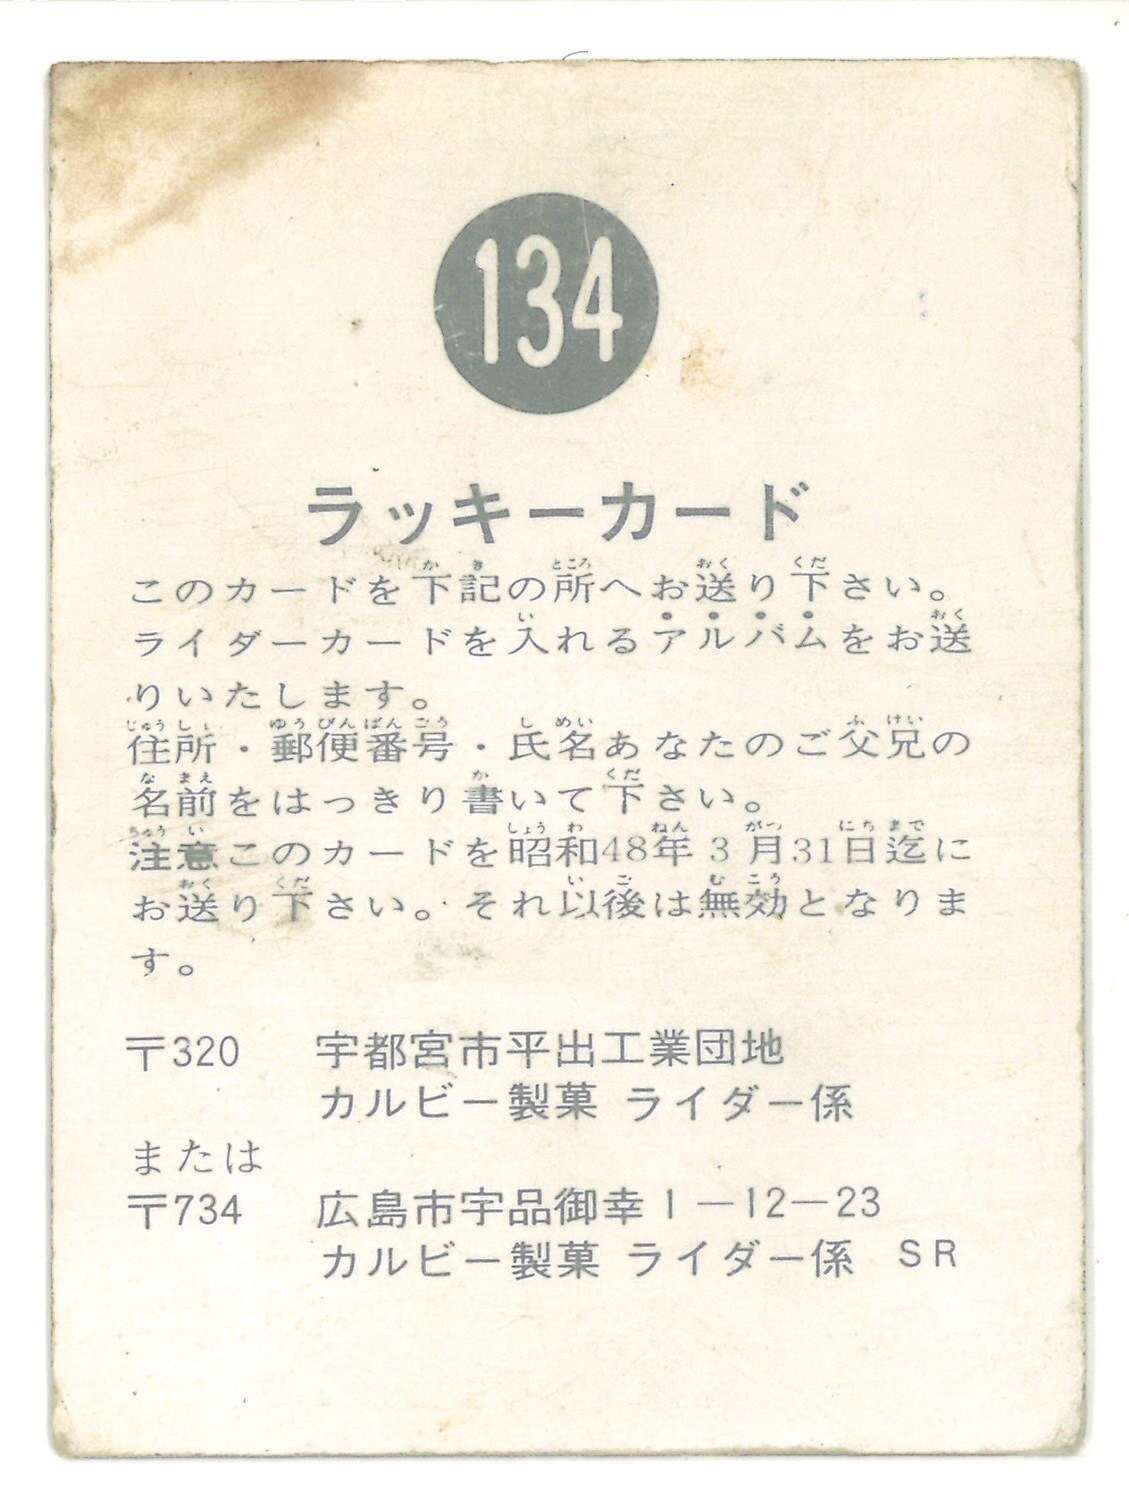 カルビー製菓 【旧仮面ライダーカード】 SR版 ラッキーカード 134 